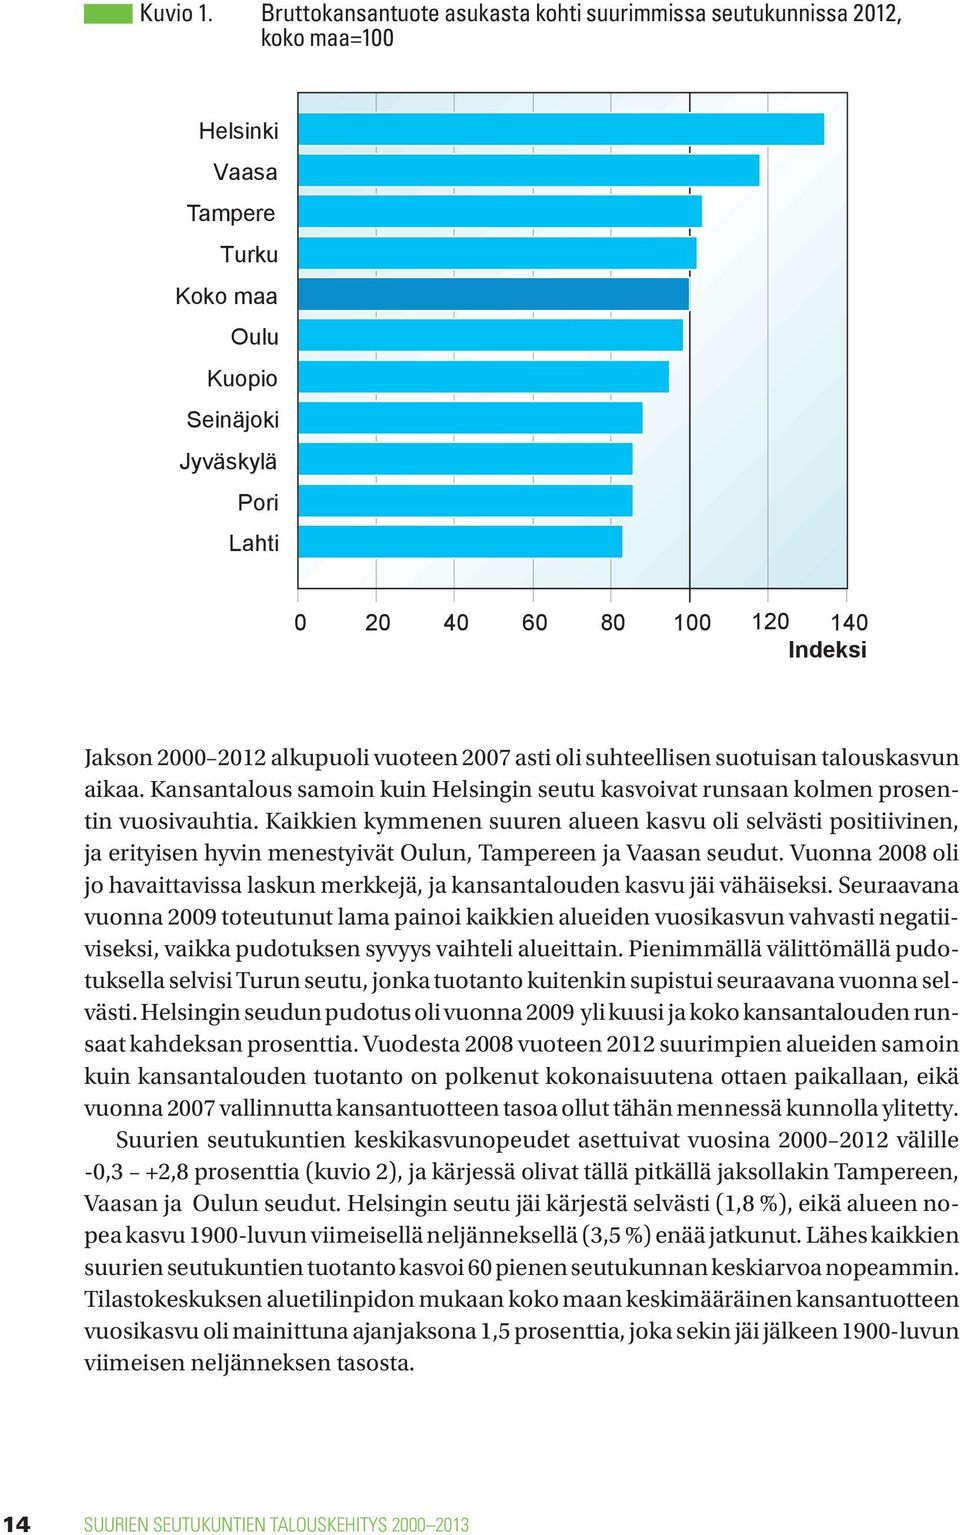 2000 2012 alkupuoli vuoteen 2007 asti oli suhteellisen suotuisan talouskasvun aikaa. Kansantalous samoin kuin Helsingin seutu kasvoivat runsaan kolmen prosentin vuosivauhtia.